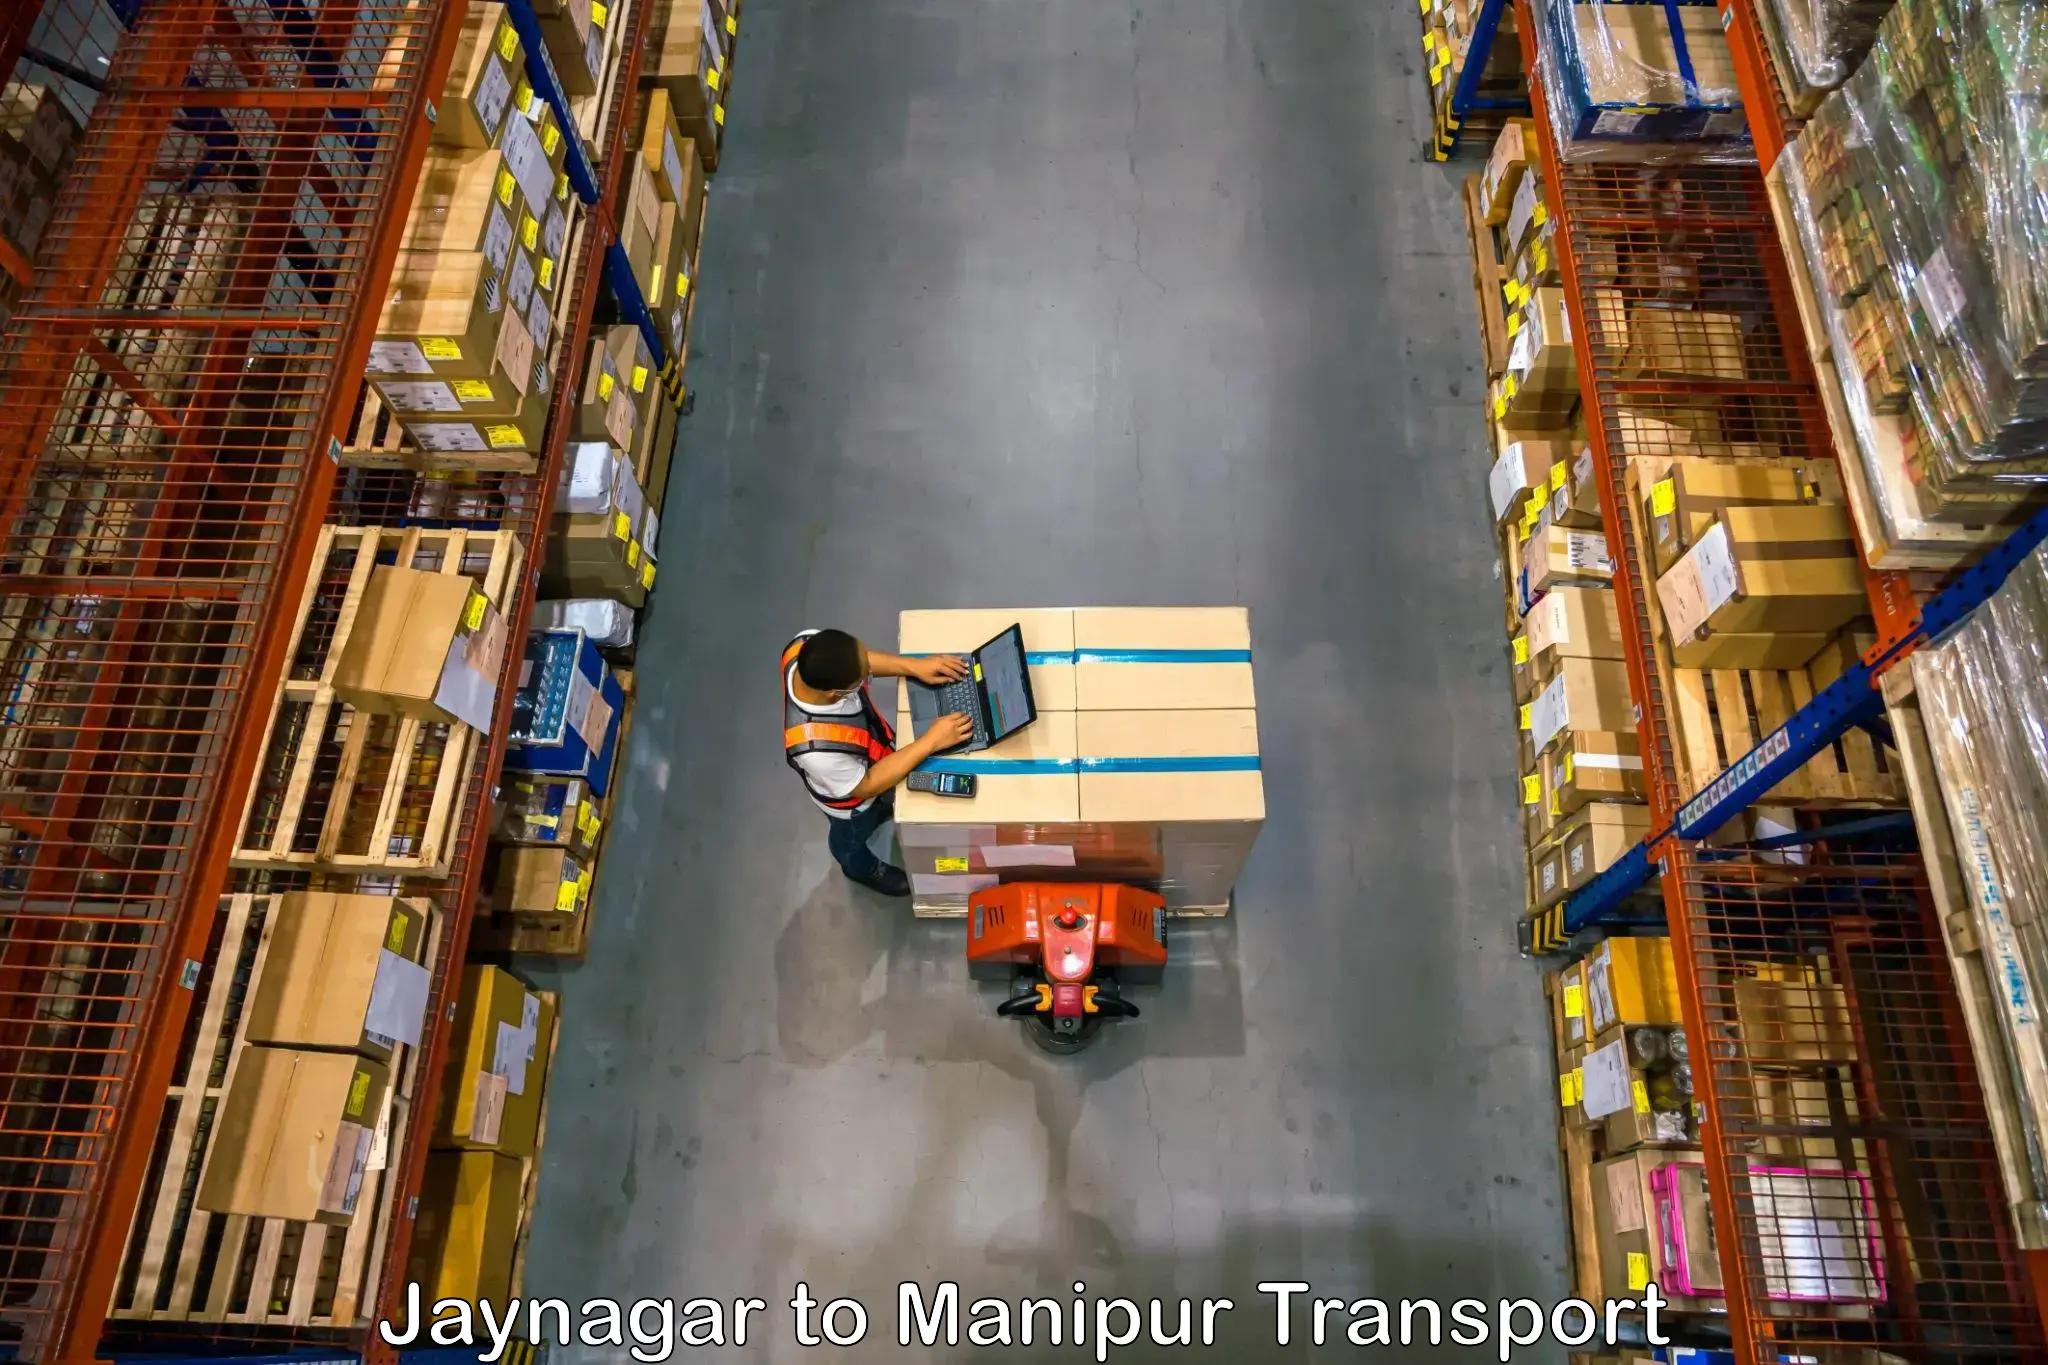 Lorry transport service Jaynagar to Manipur